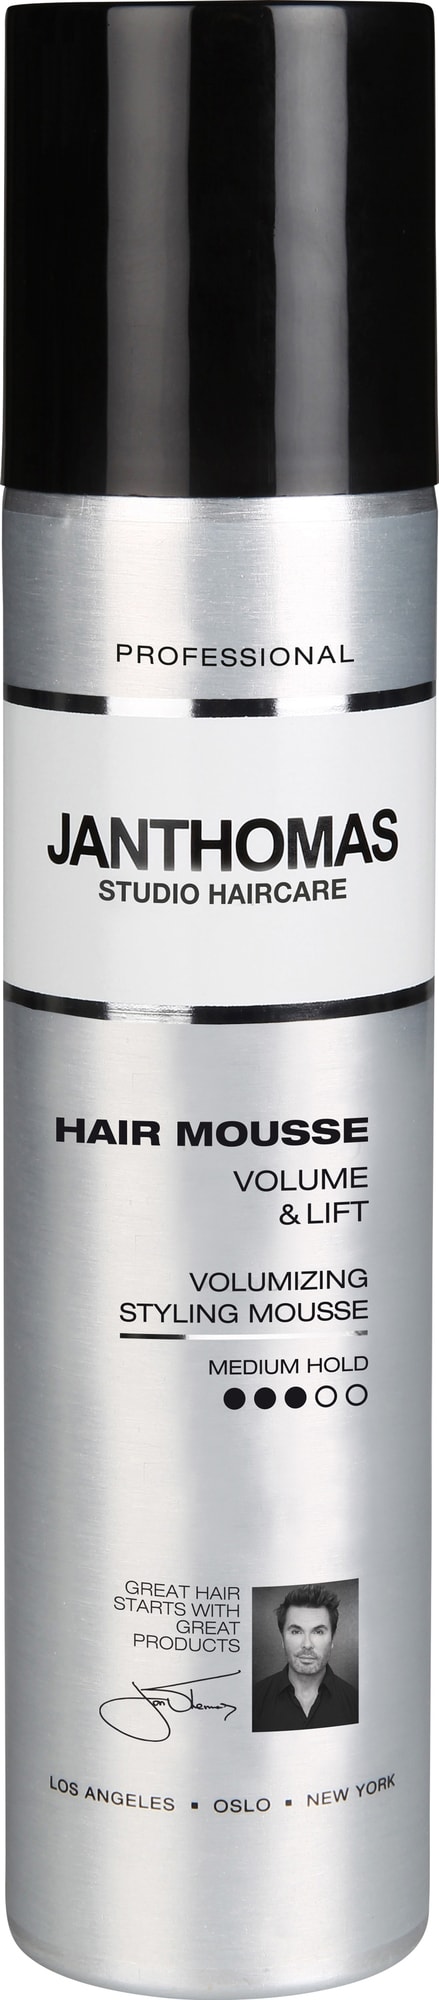 Jan Thomas Volume & Lift hårmousse JT941243 thumbnail